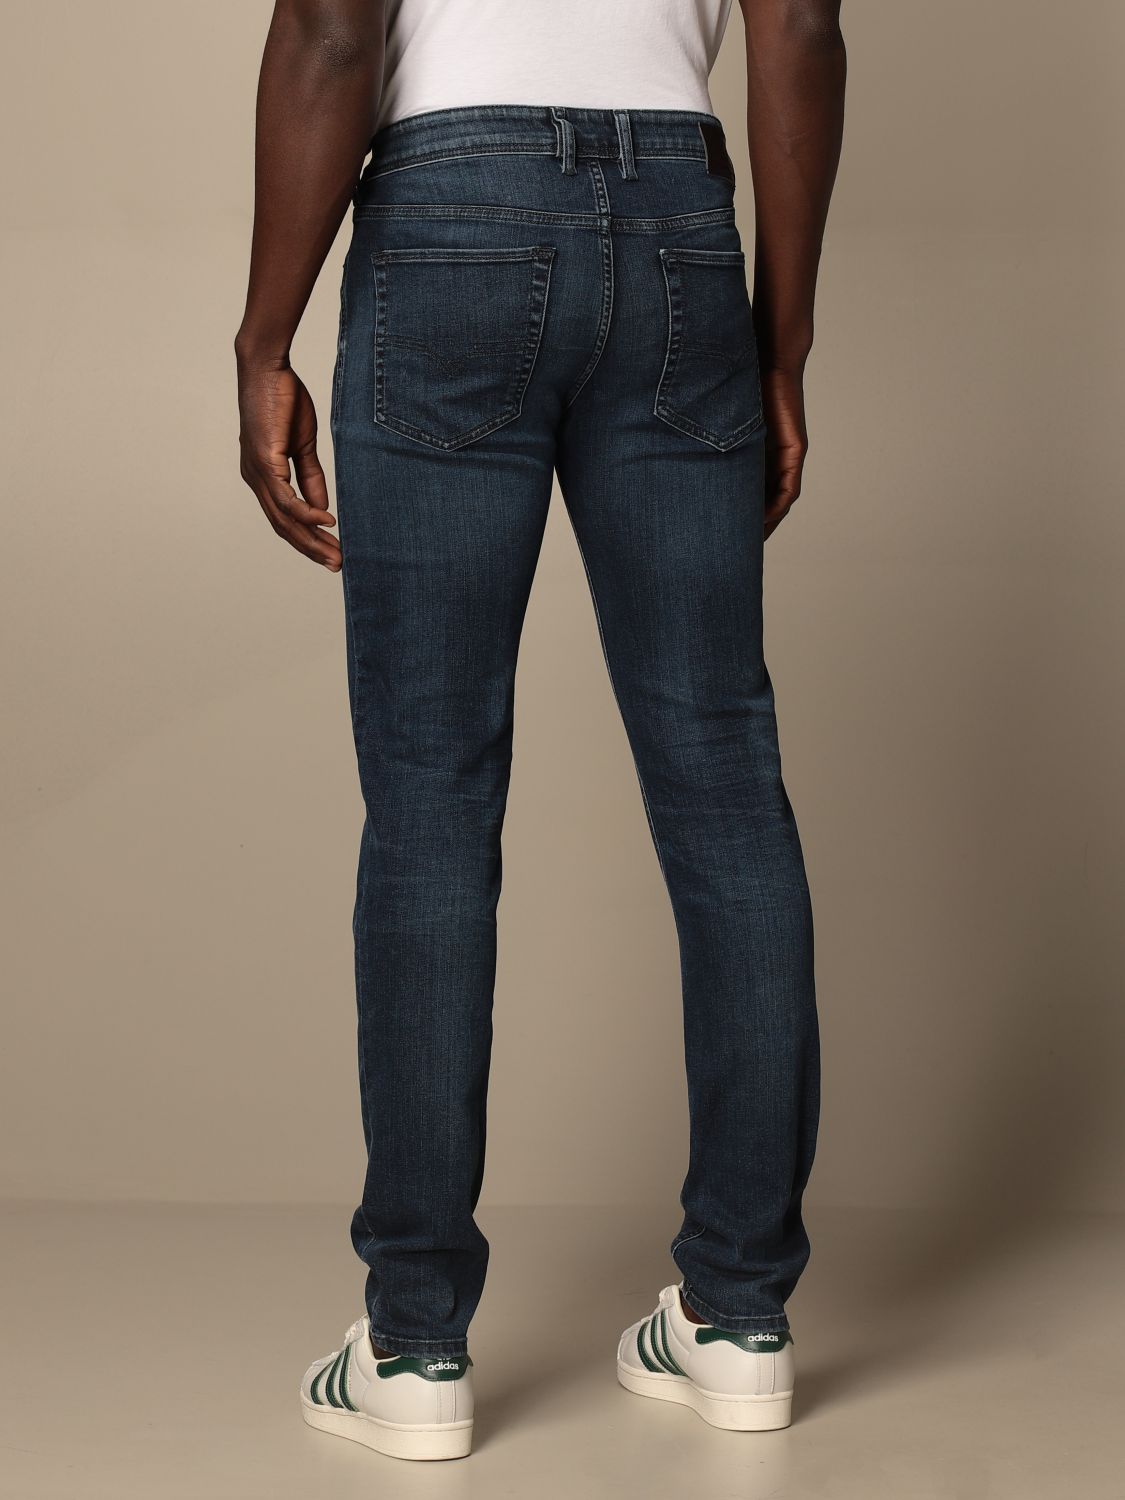 DIESEL: Sleenker-x 5-pocket skinny stretch jeans | Jeans Diesel Men ...